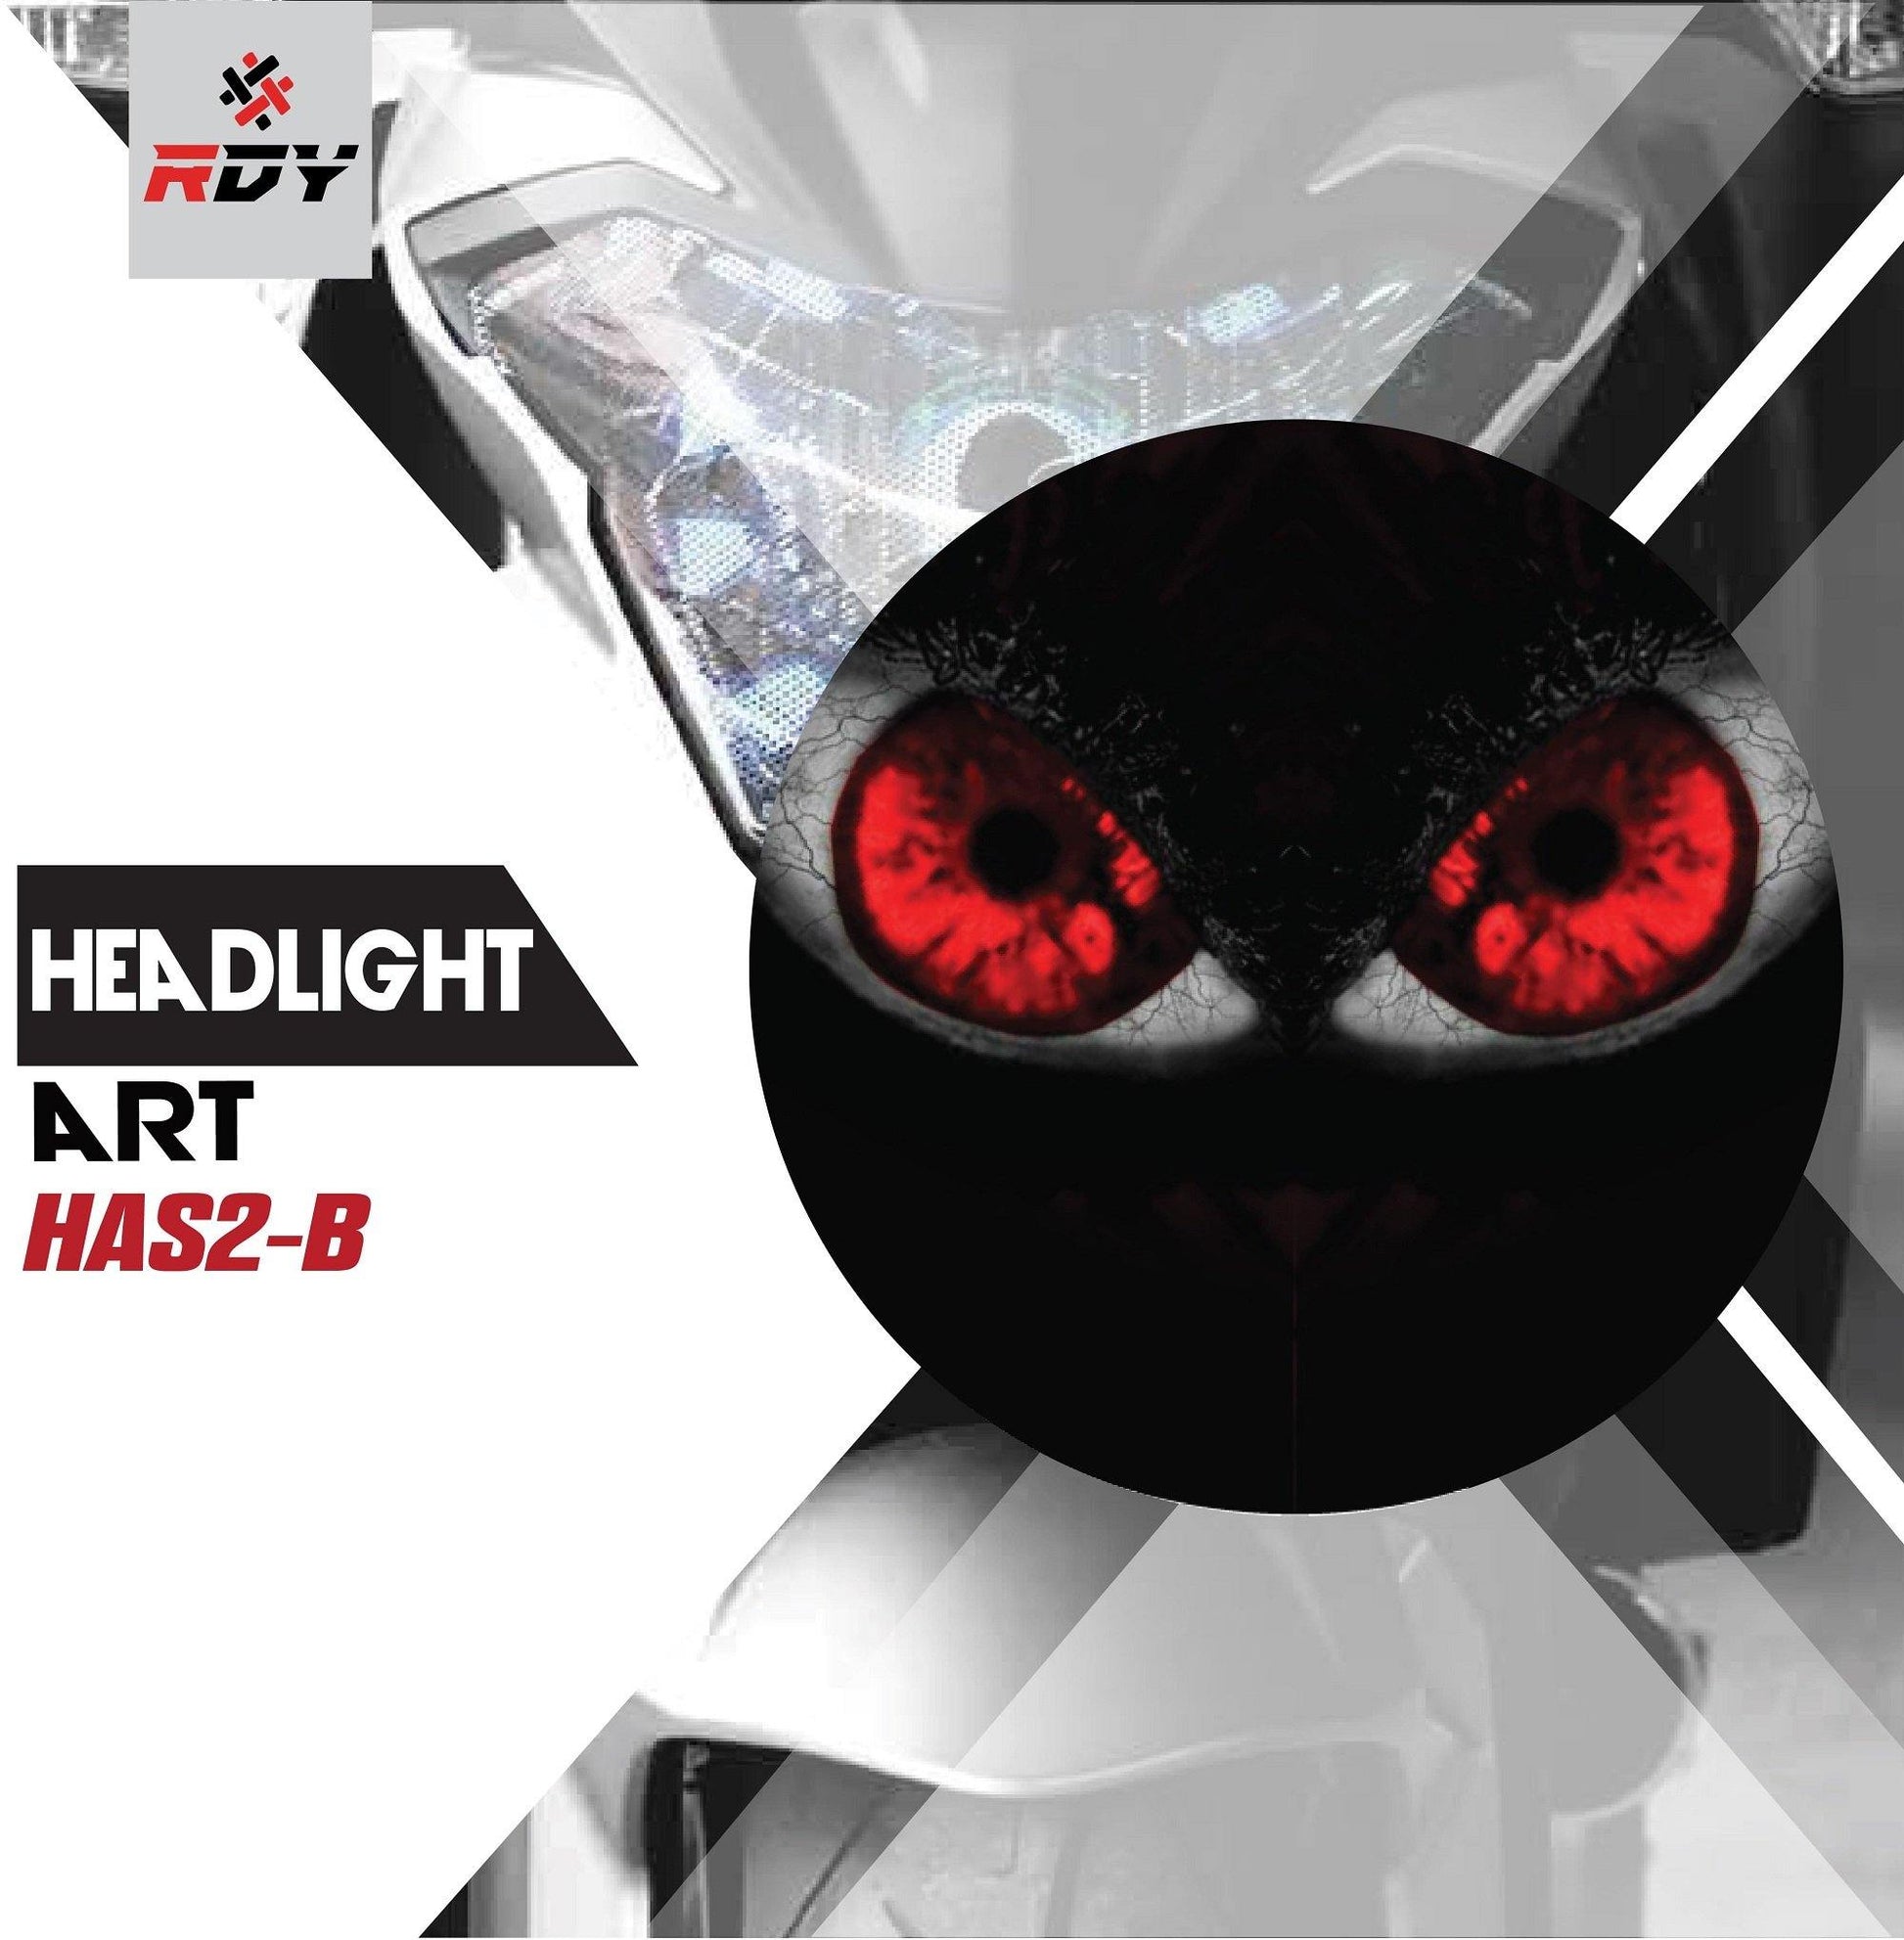 RDY Headlight Art fits for Suzuki SV650 - Durian Bikers